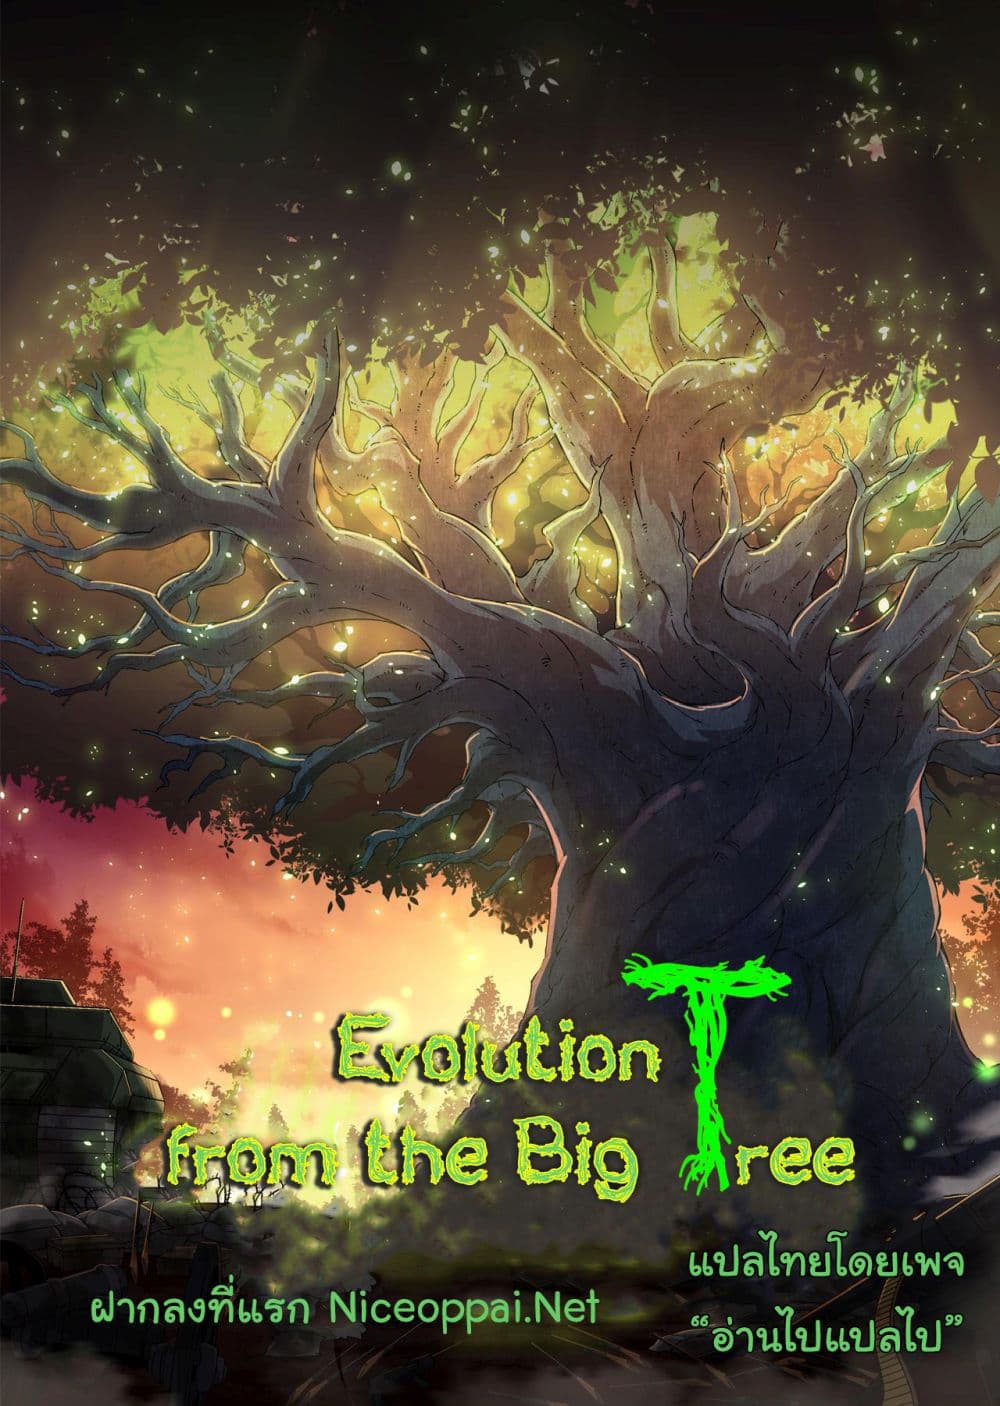 Evolution from the Big Tree Ã Â¸â€¢Ã Â¸Â­Ã Â¸â„¢Ã Â¸â€”Ã Â¸ÂµÃ Â¹Ë† 11 (1)